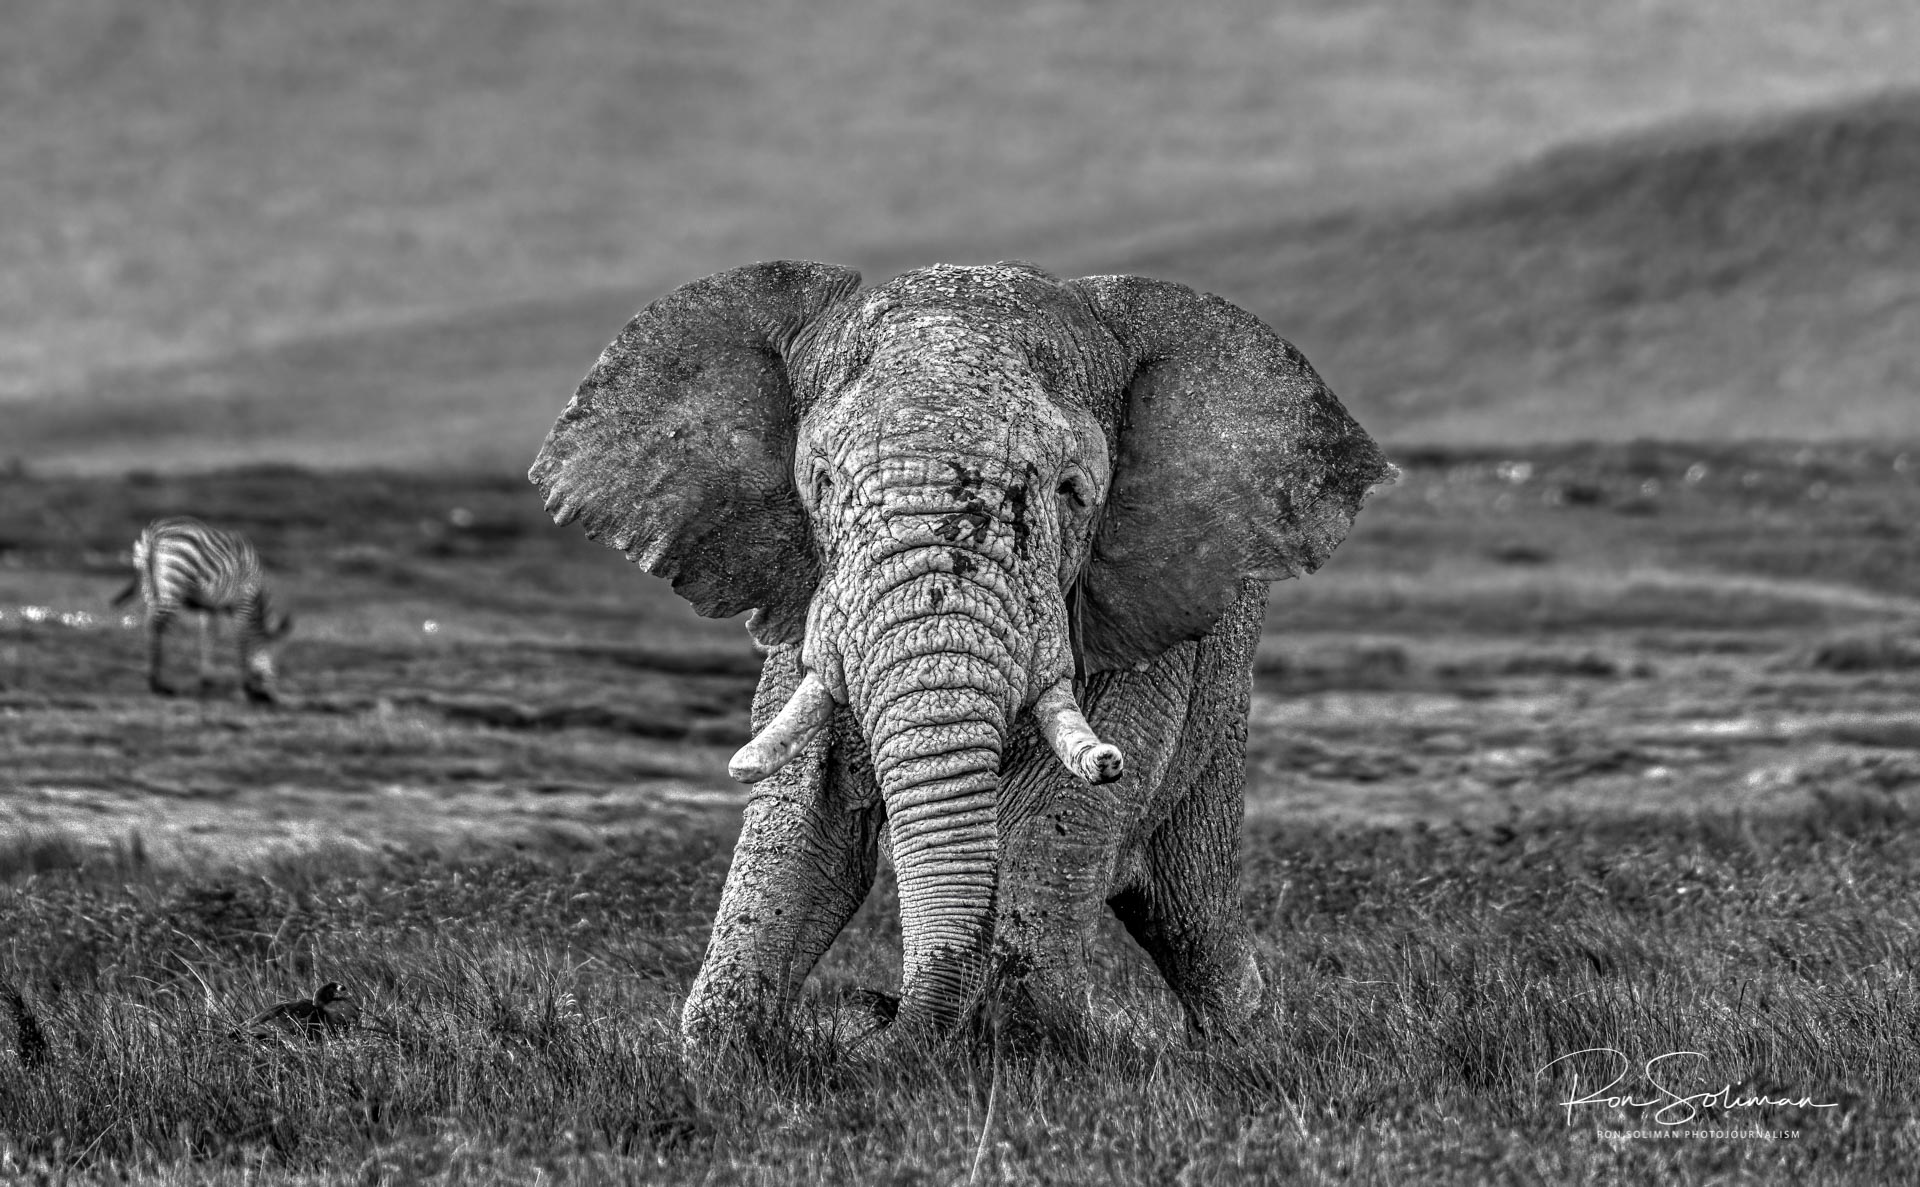 Elephants of Ngorongoro Crater